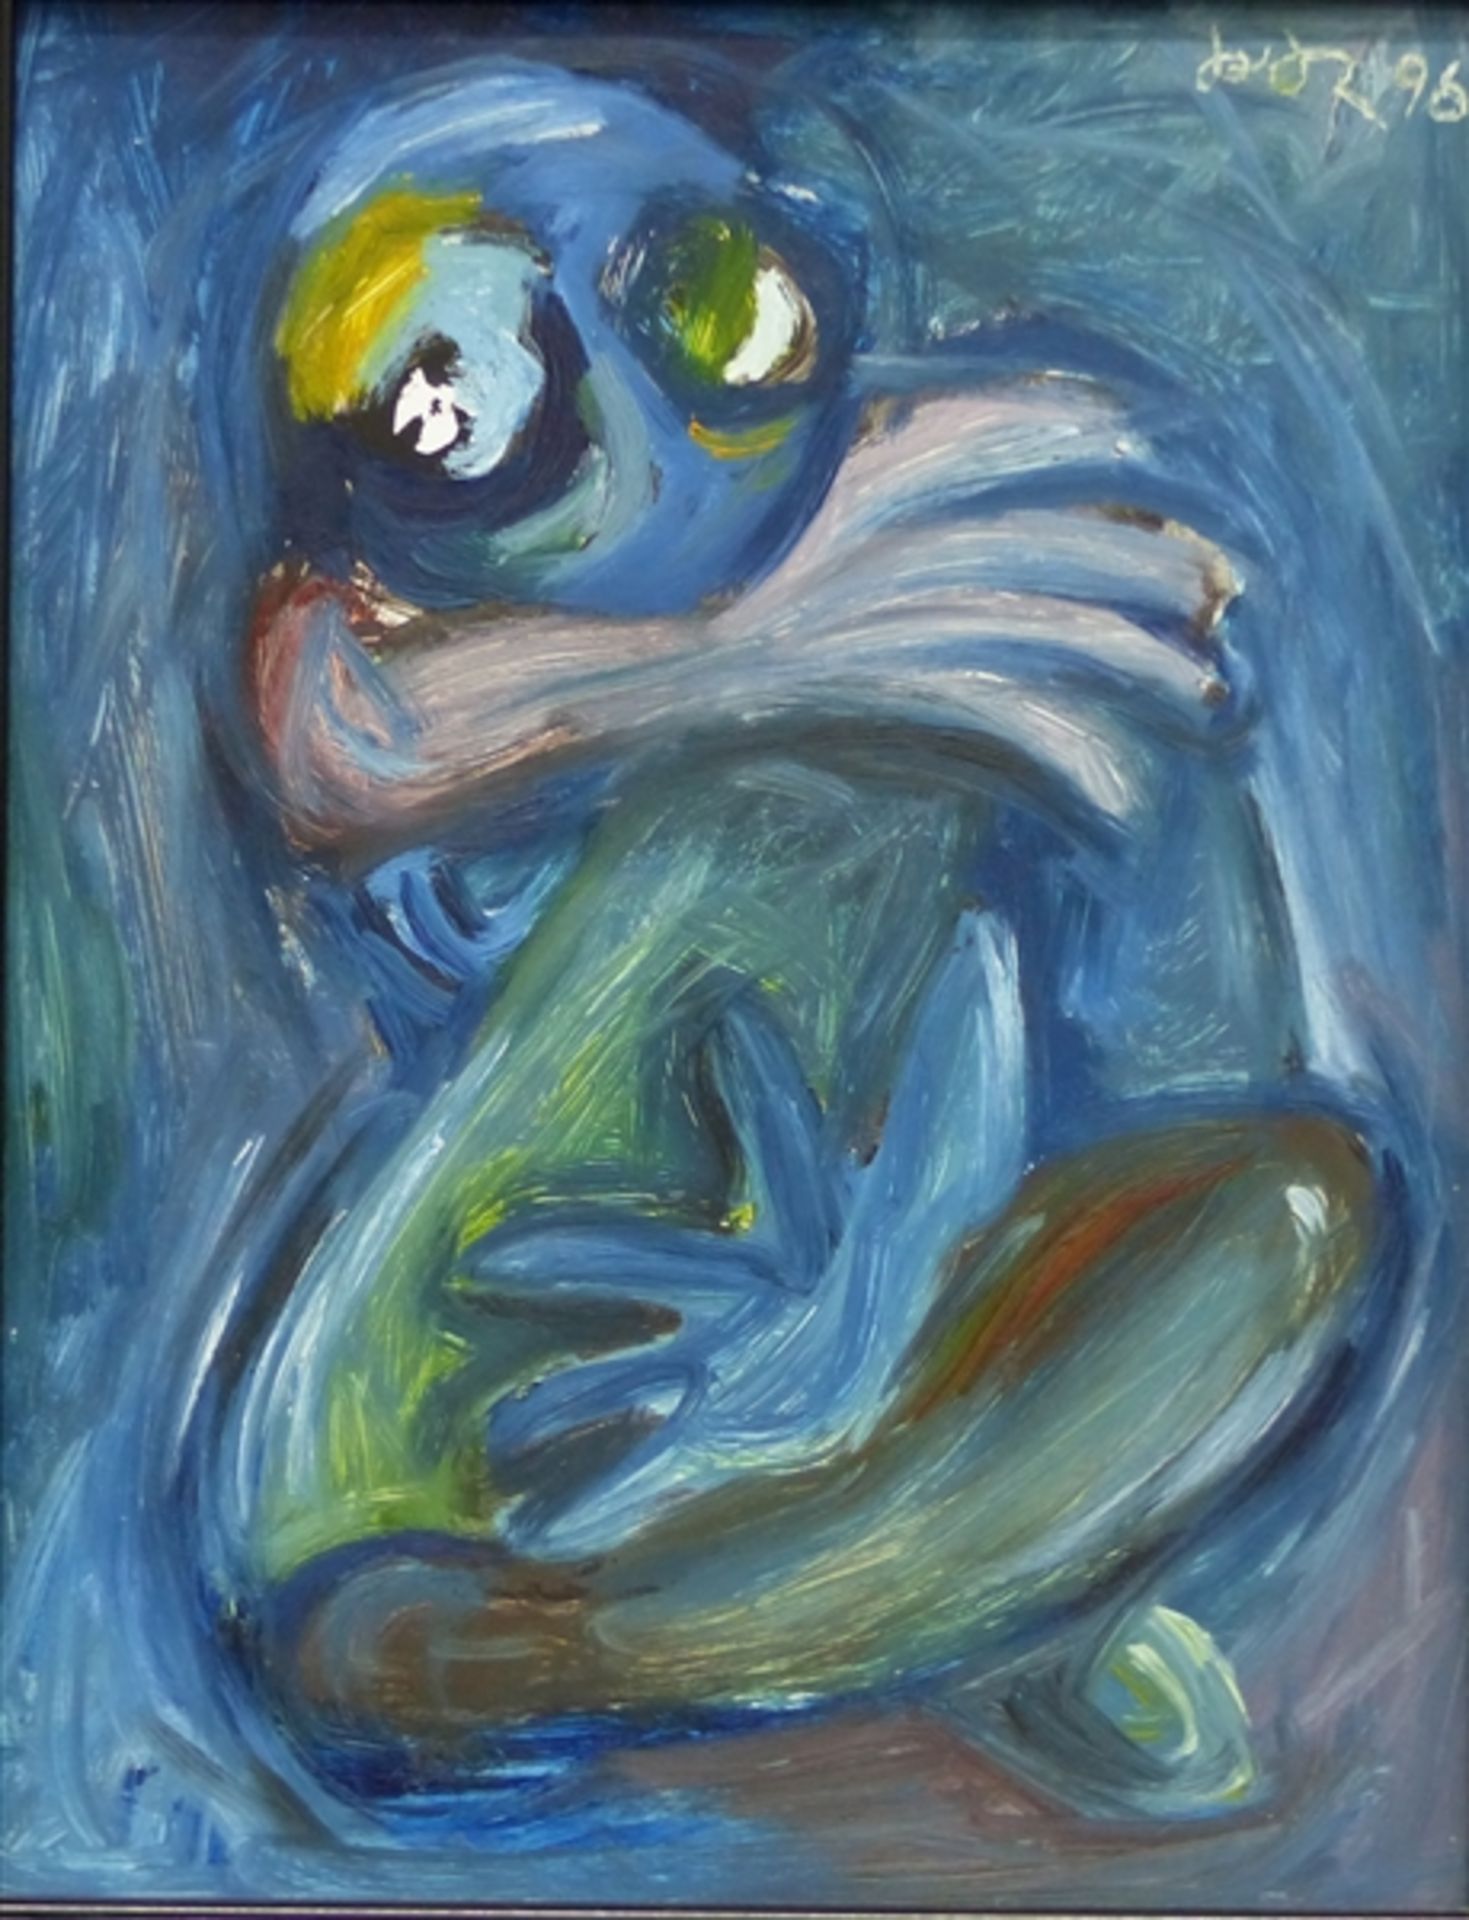 Unbekannt, 20. Jh. Öl auf Malerpappe, moderne Darstellung eines froschähnlichen Wesens, rechts